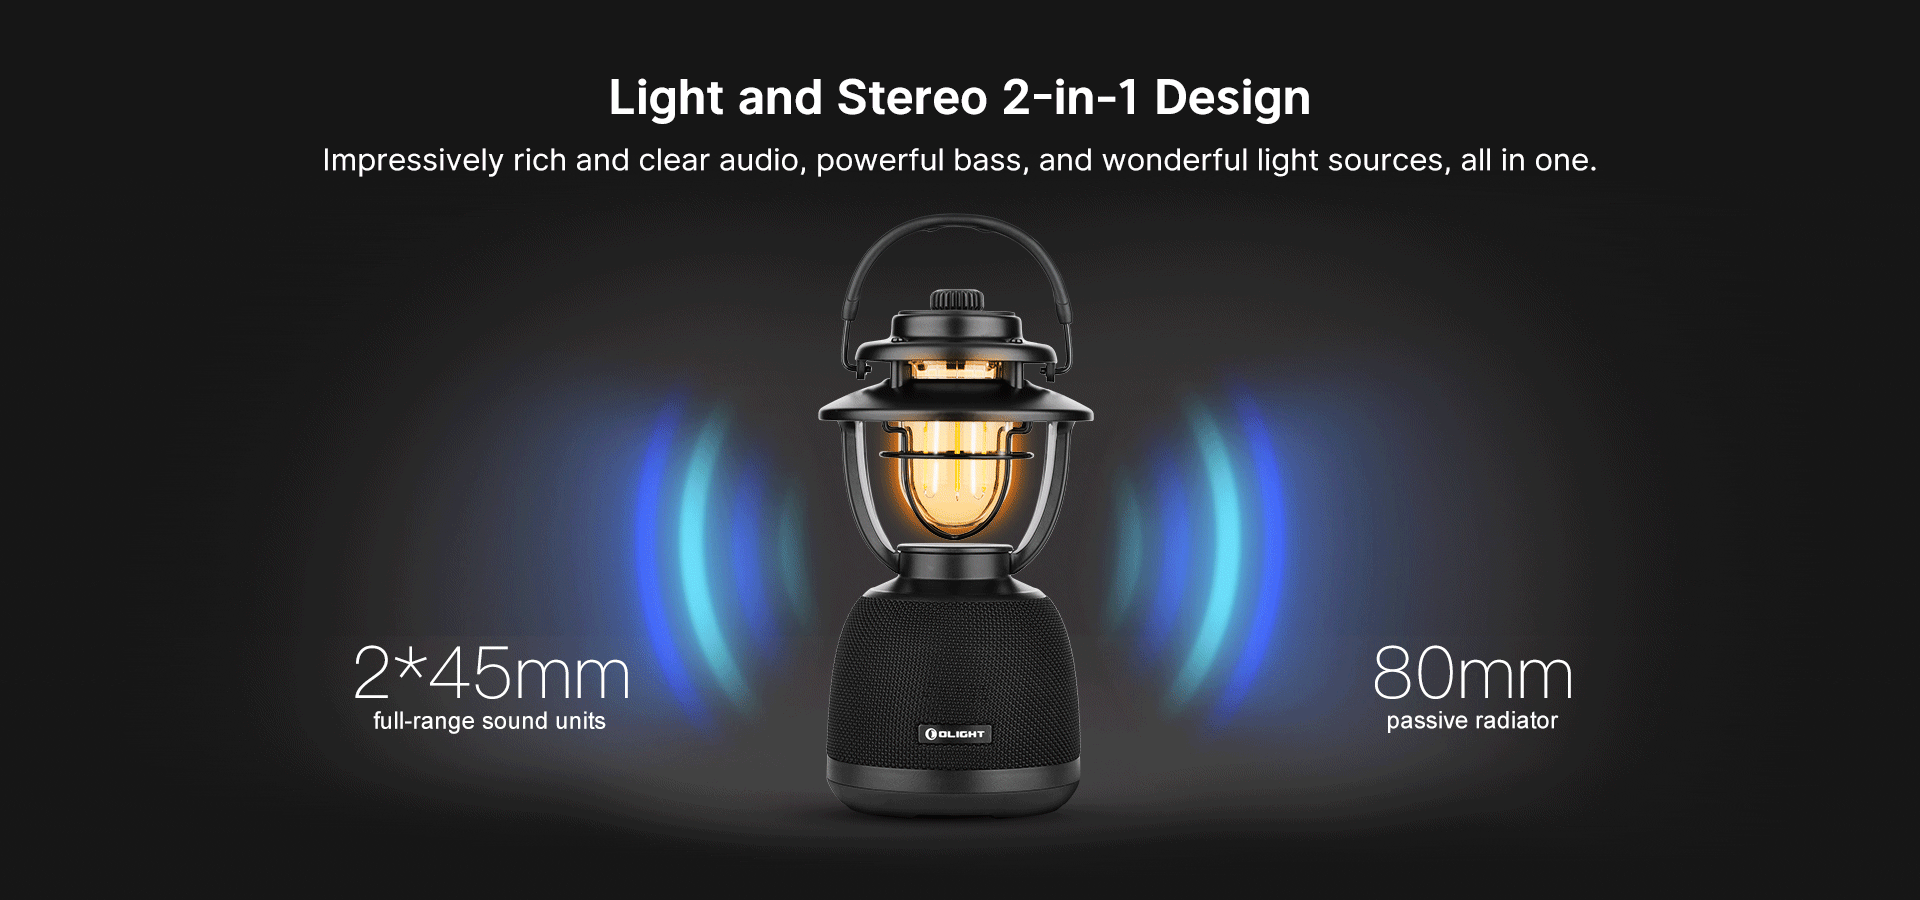 light and stero 2-in-1 design